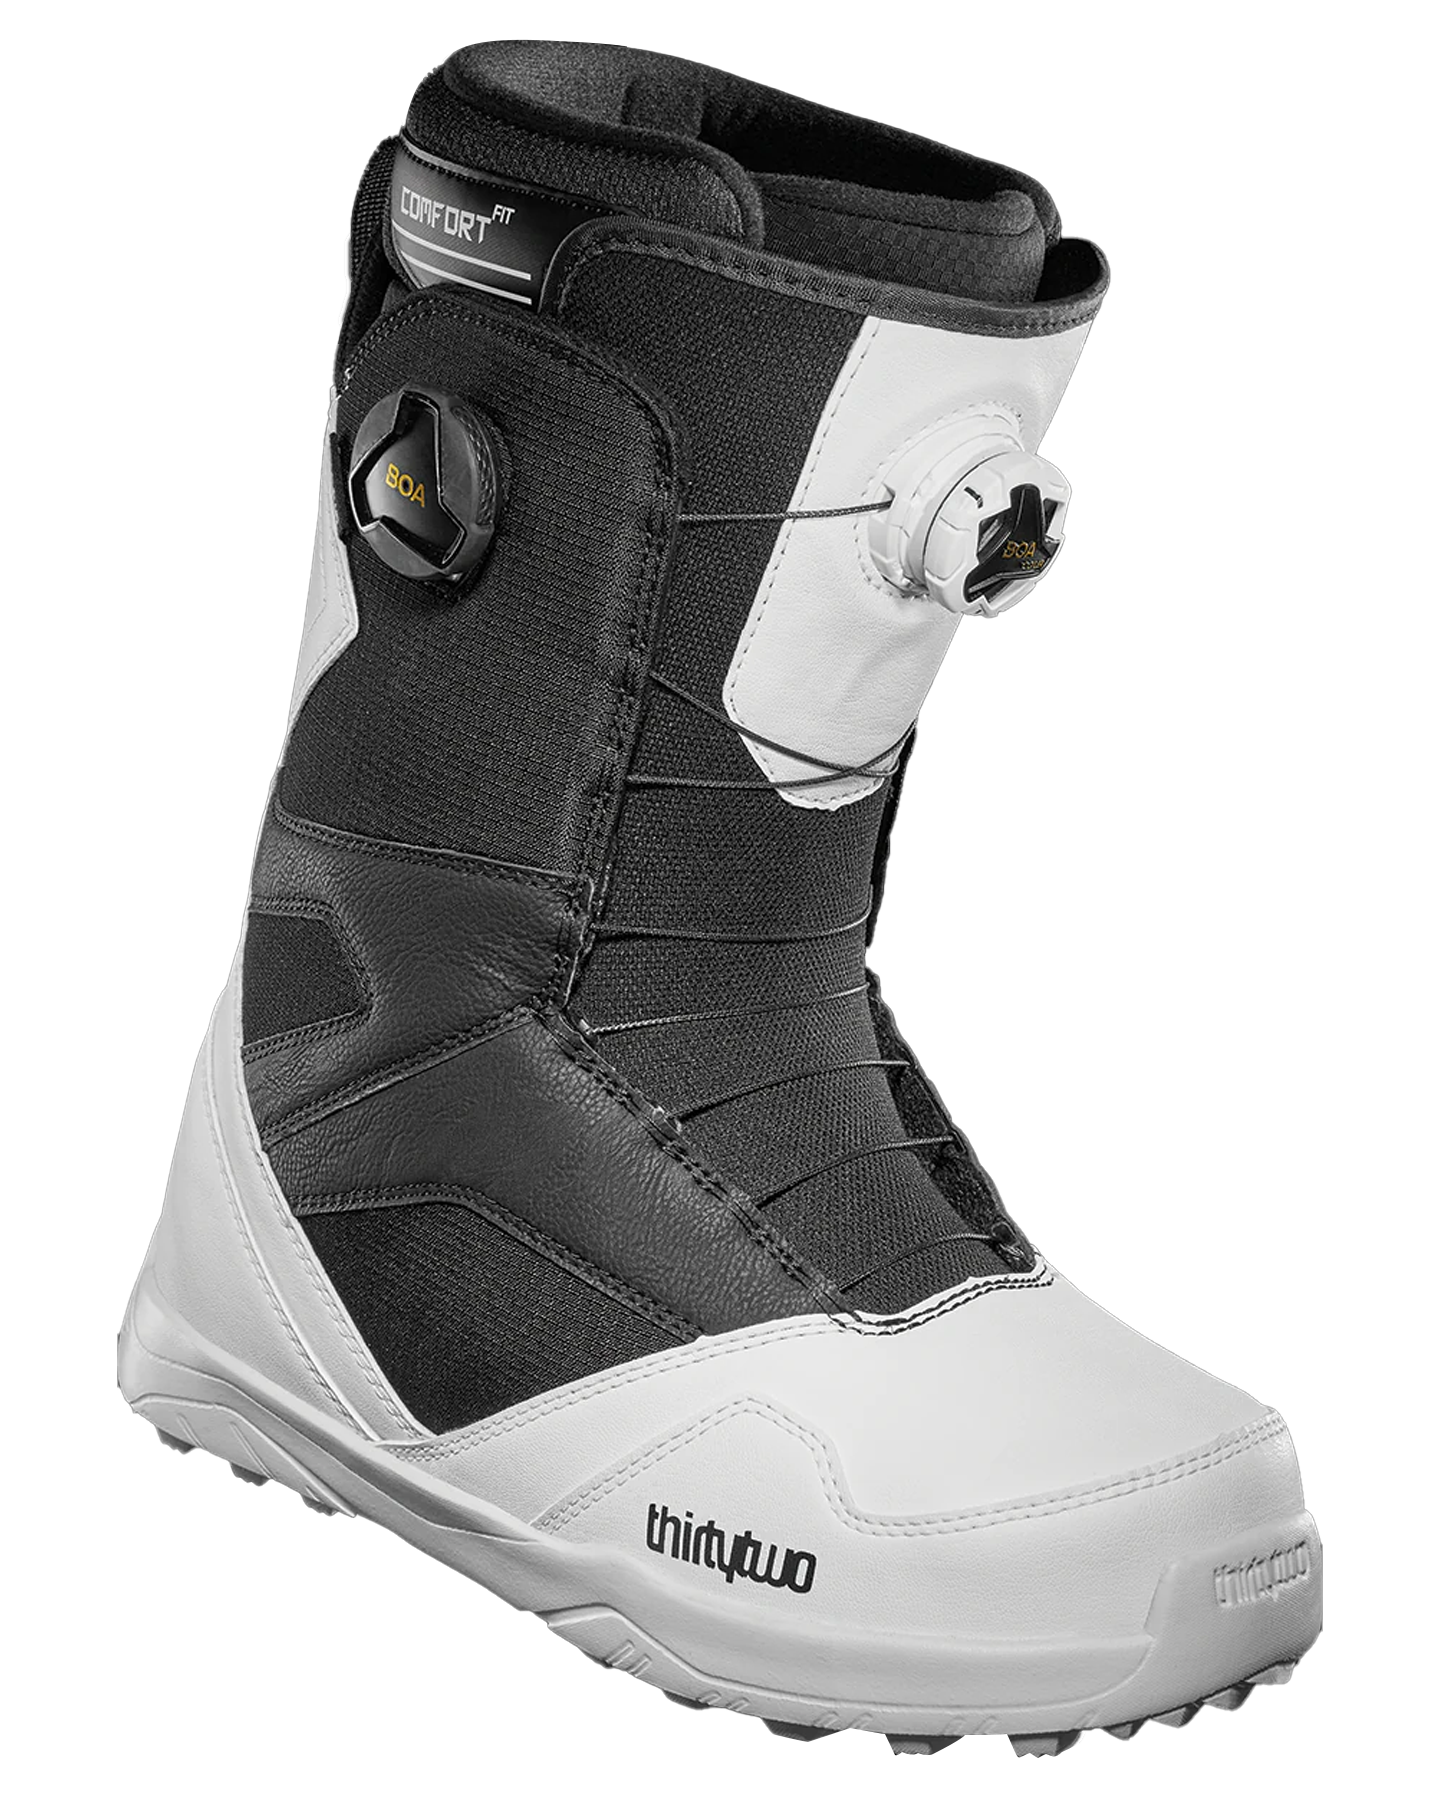 Thirtytwo Stw Double Boa - White/Black - 2023 Snowboard Boots - Mens - Trojan Wake Ski Snow